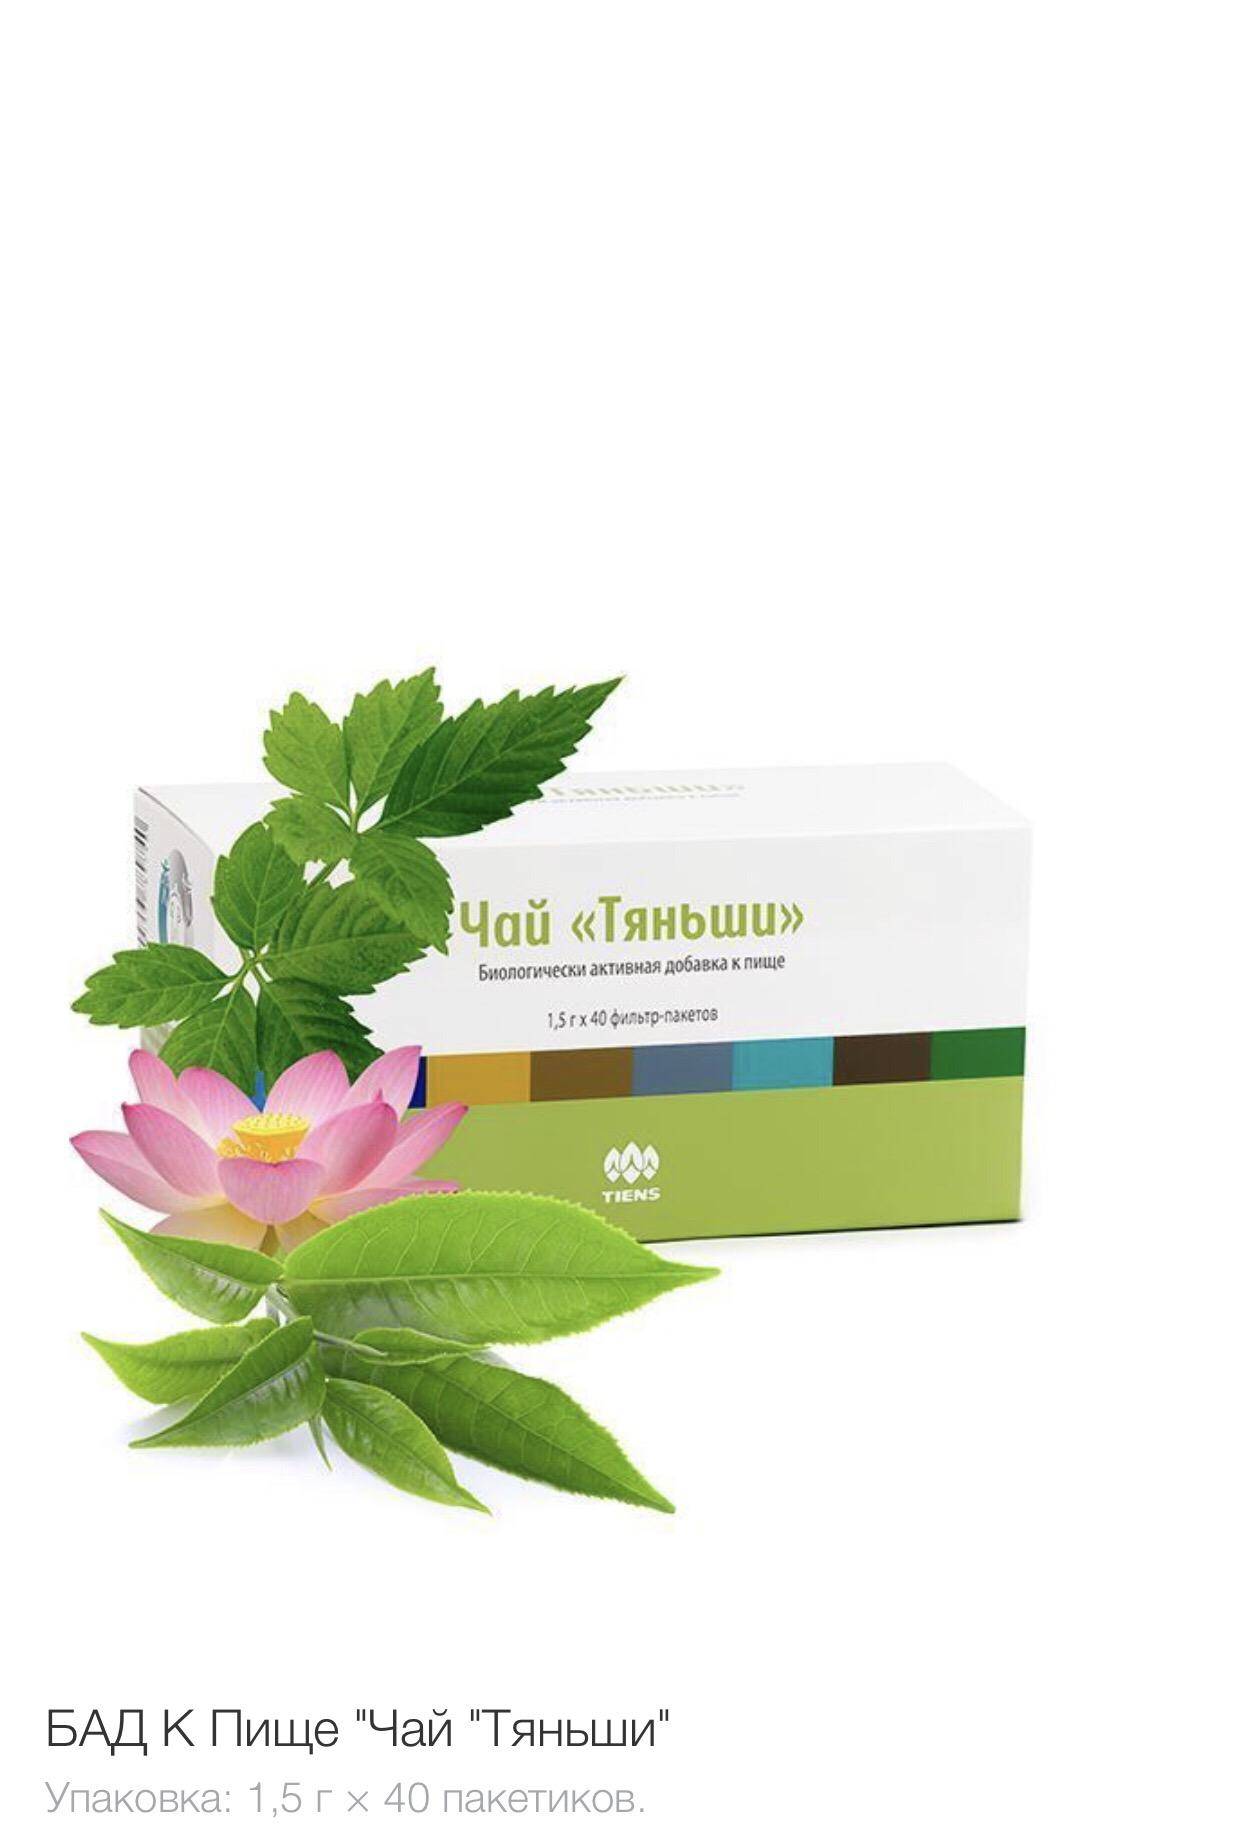 Чай "тяньши" -эффективная биологически активная добавка для оздоровления организма